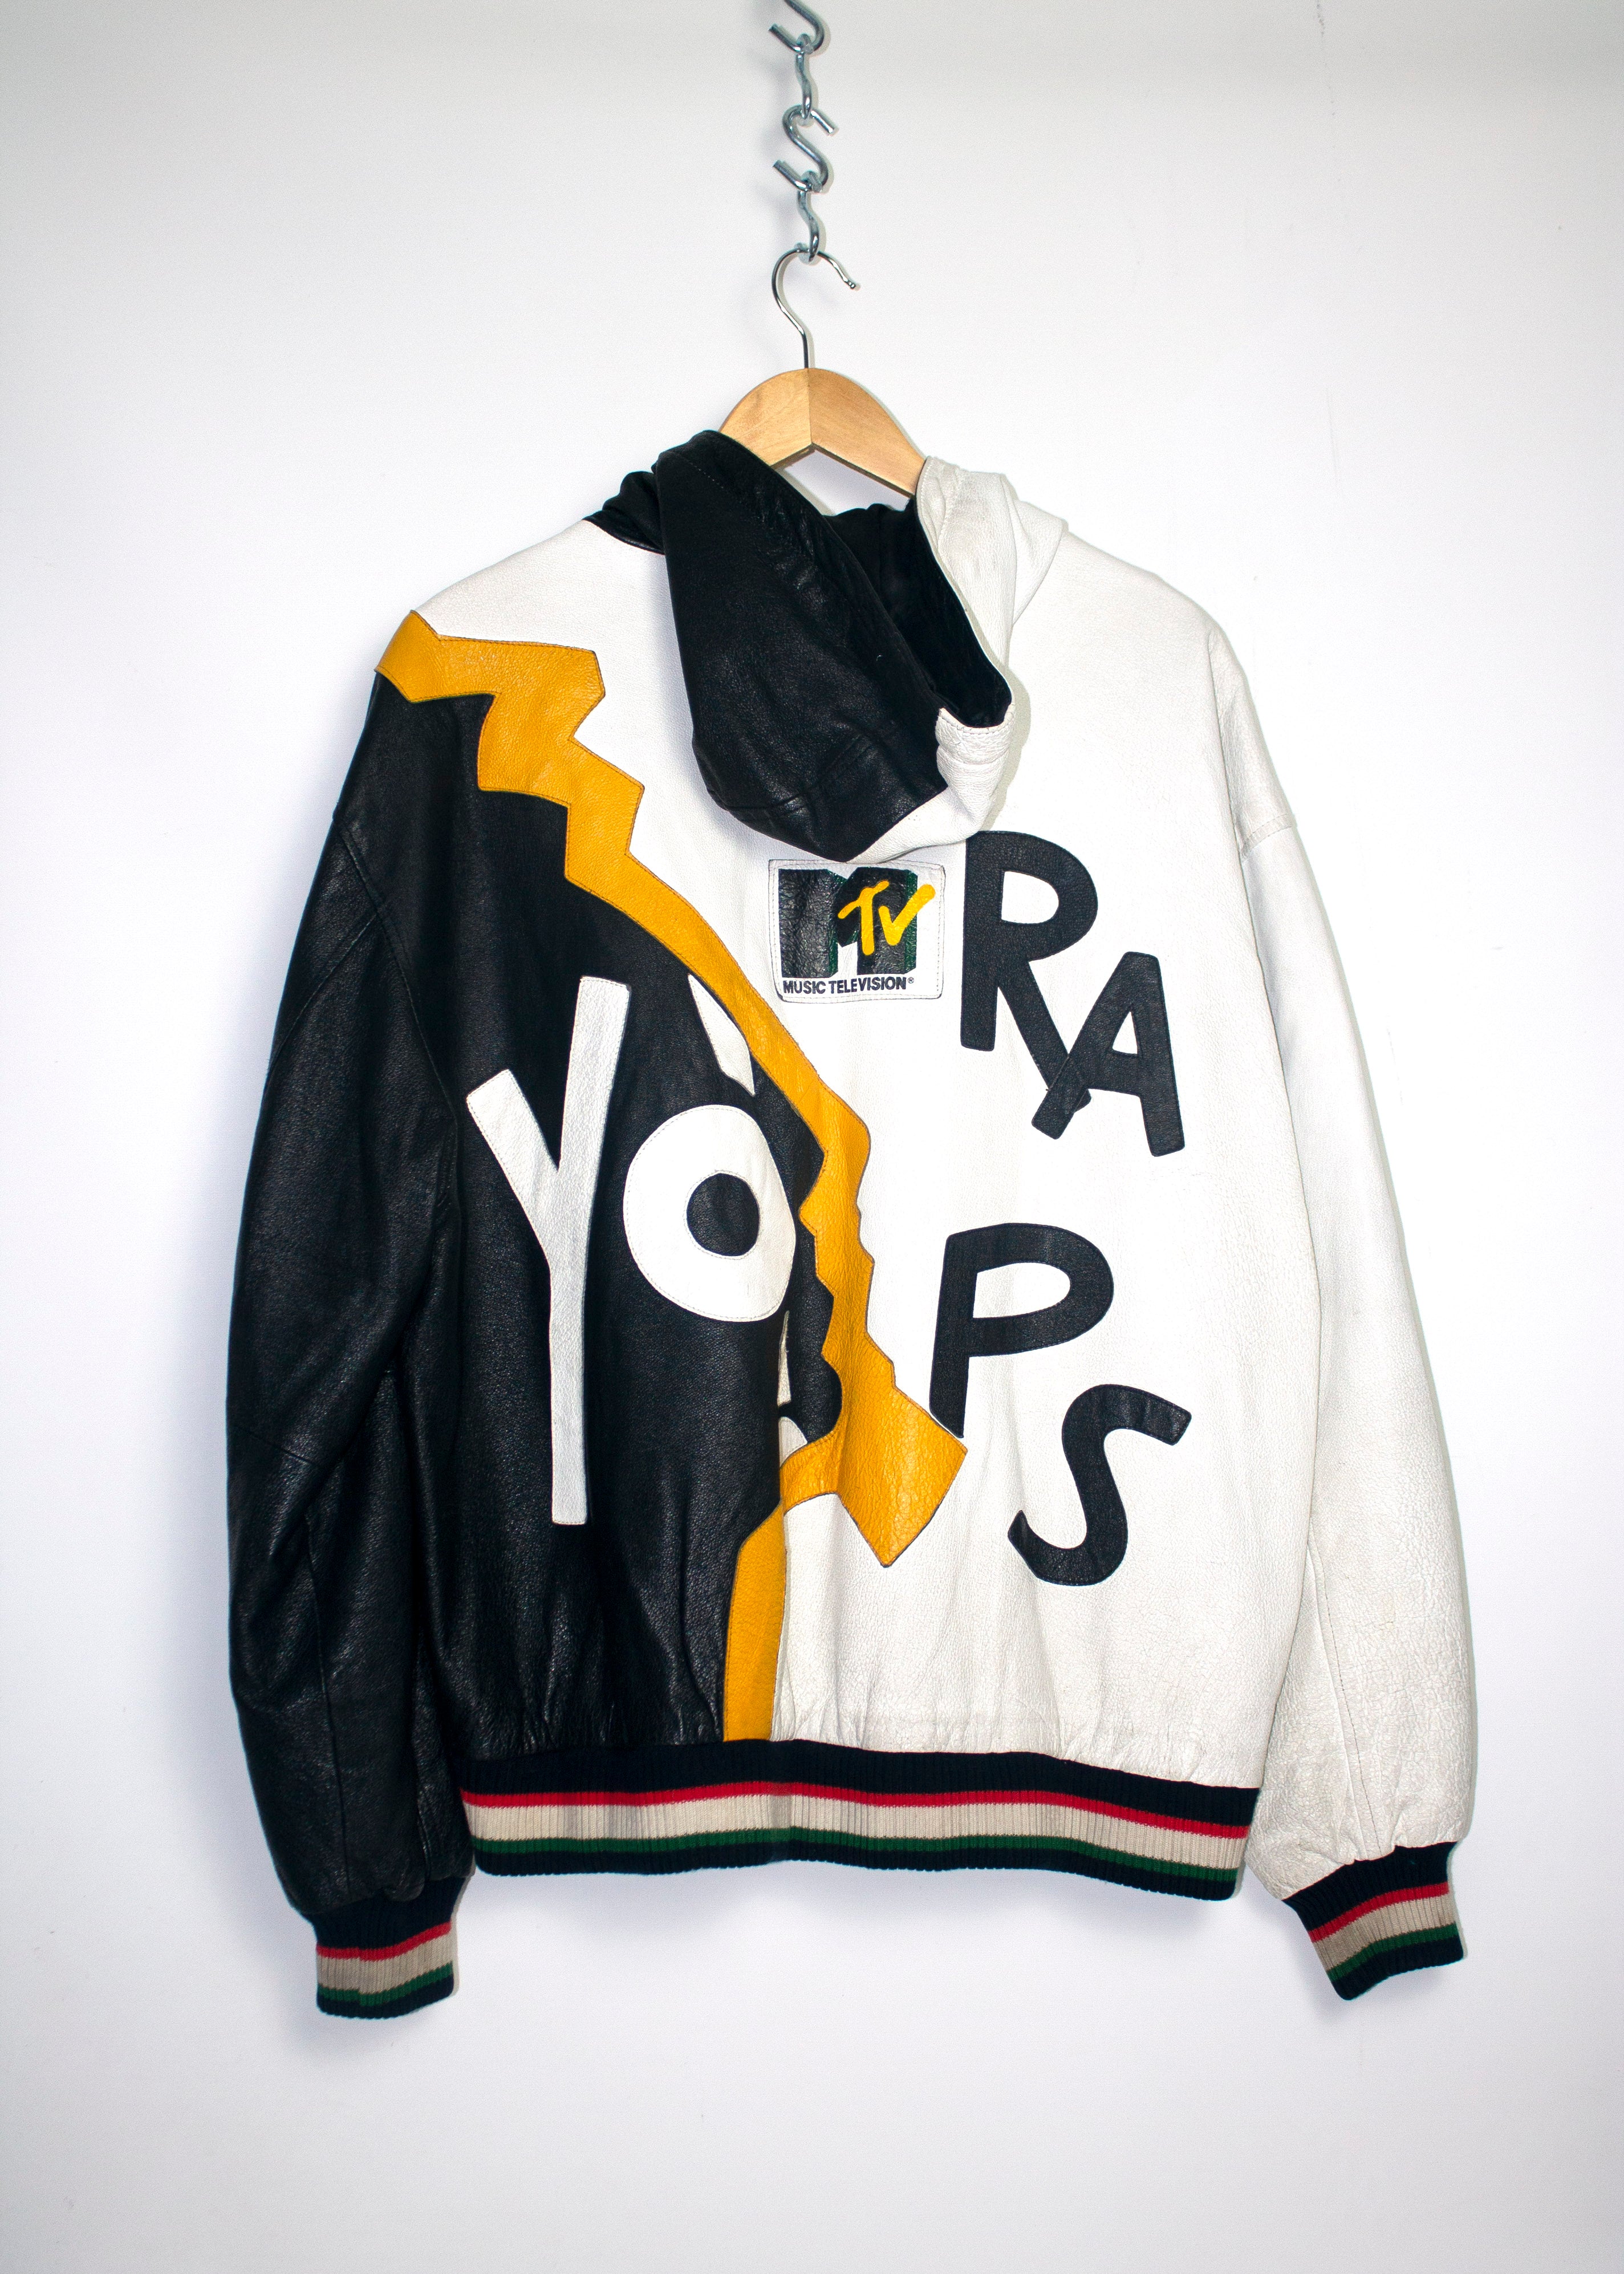 Vintage 1992 Yo! MTV Raps Leather Jacket Sz XL